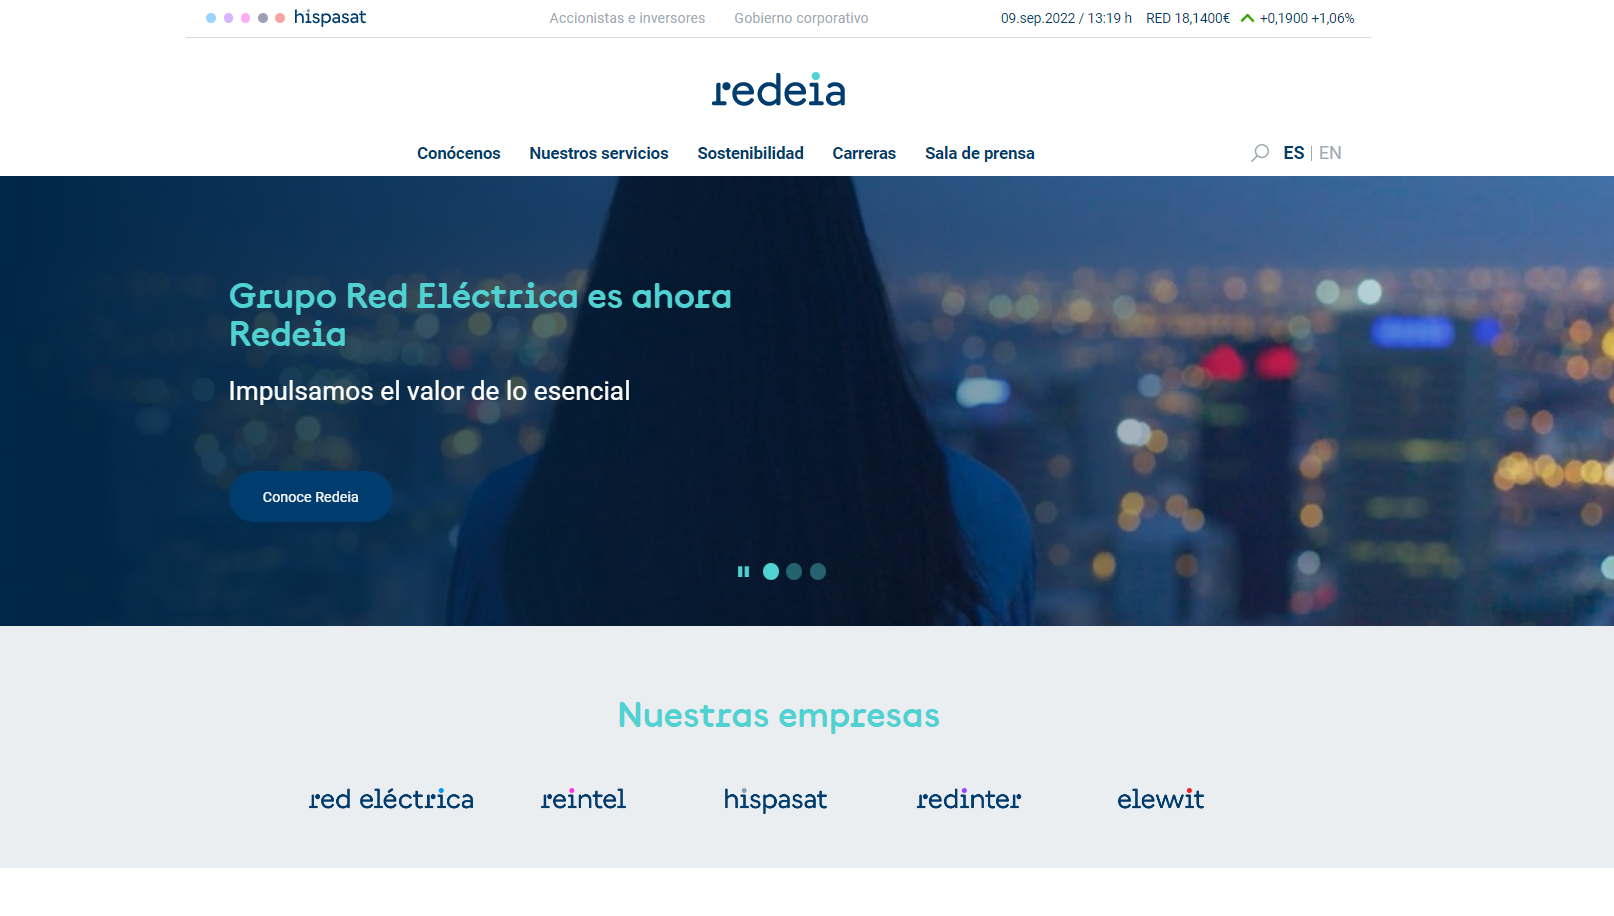 Traslado de la página web corporativa de Red Eléctrica Corporación a ser www.redeia.com